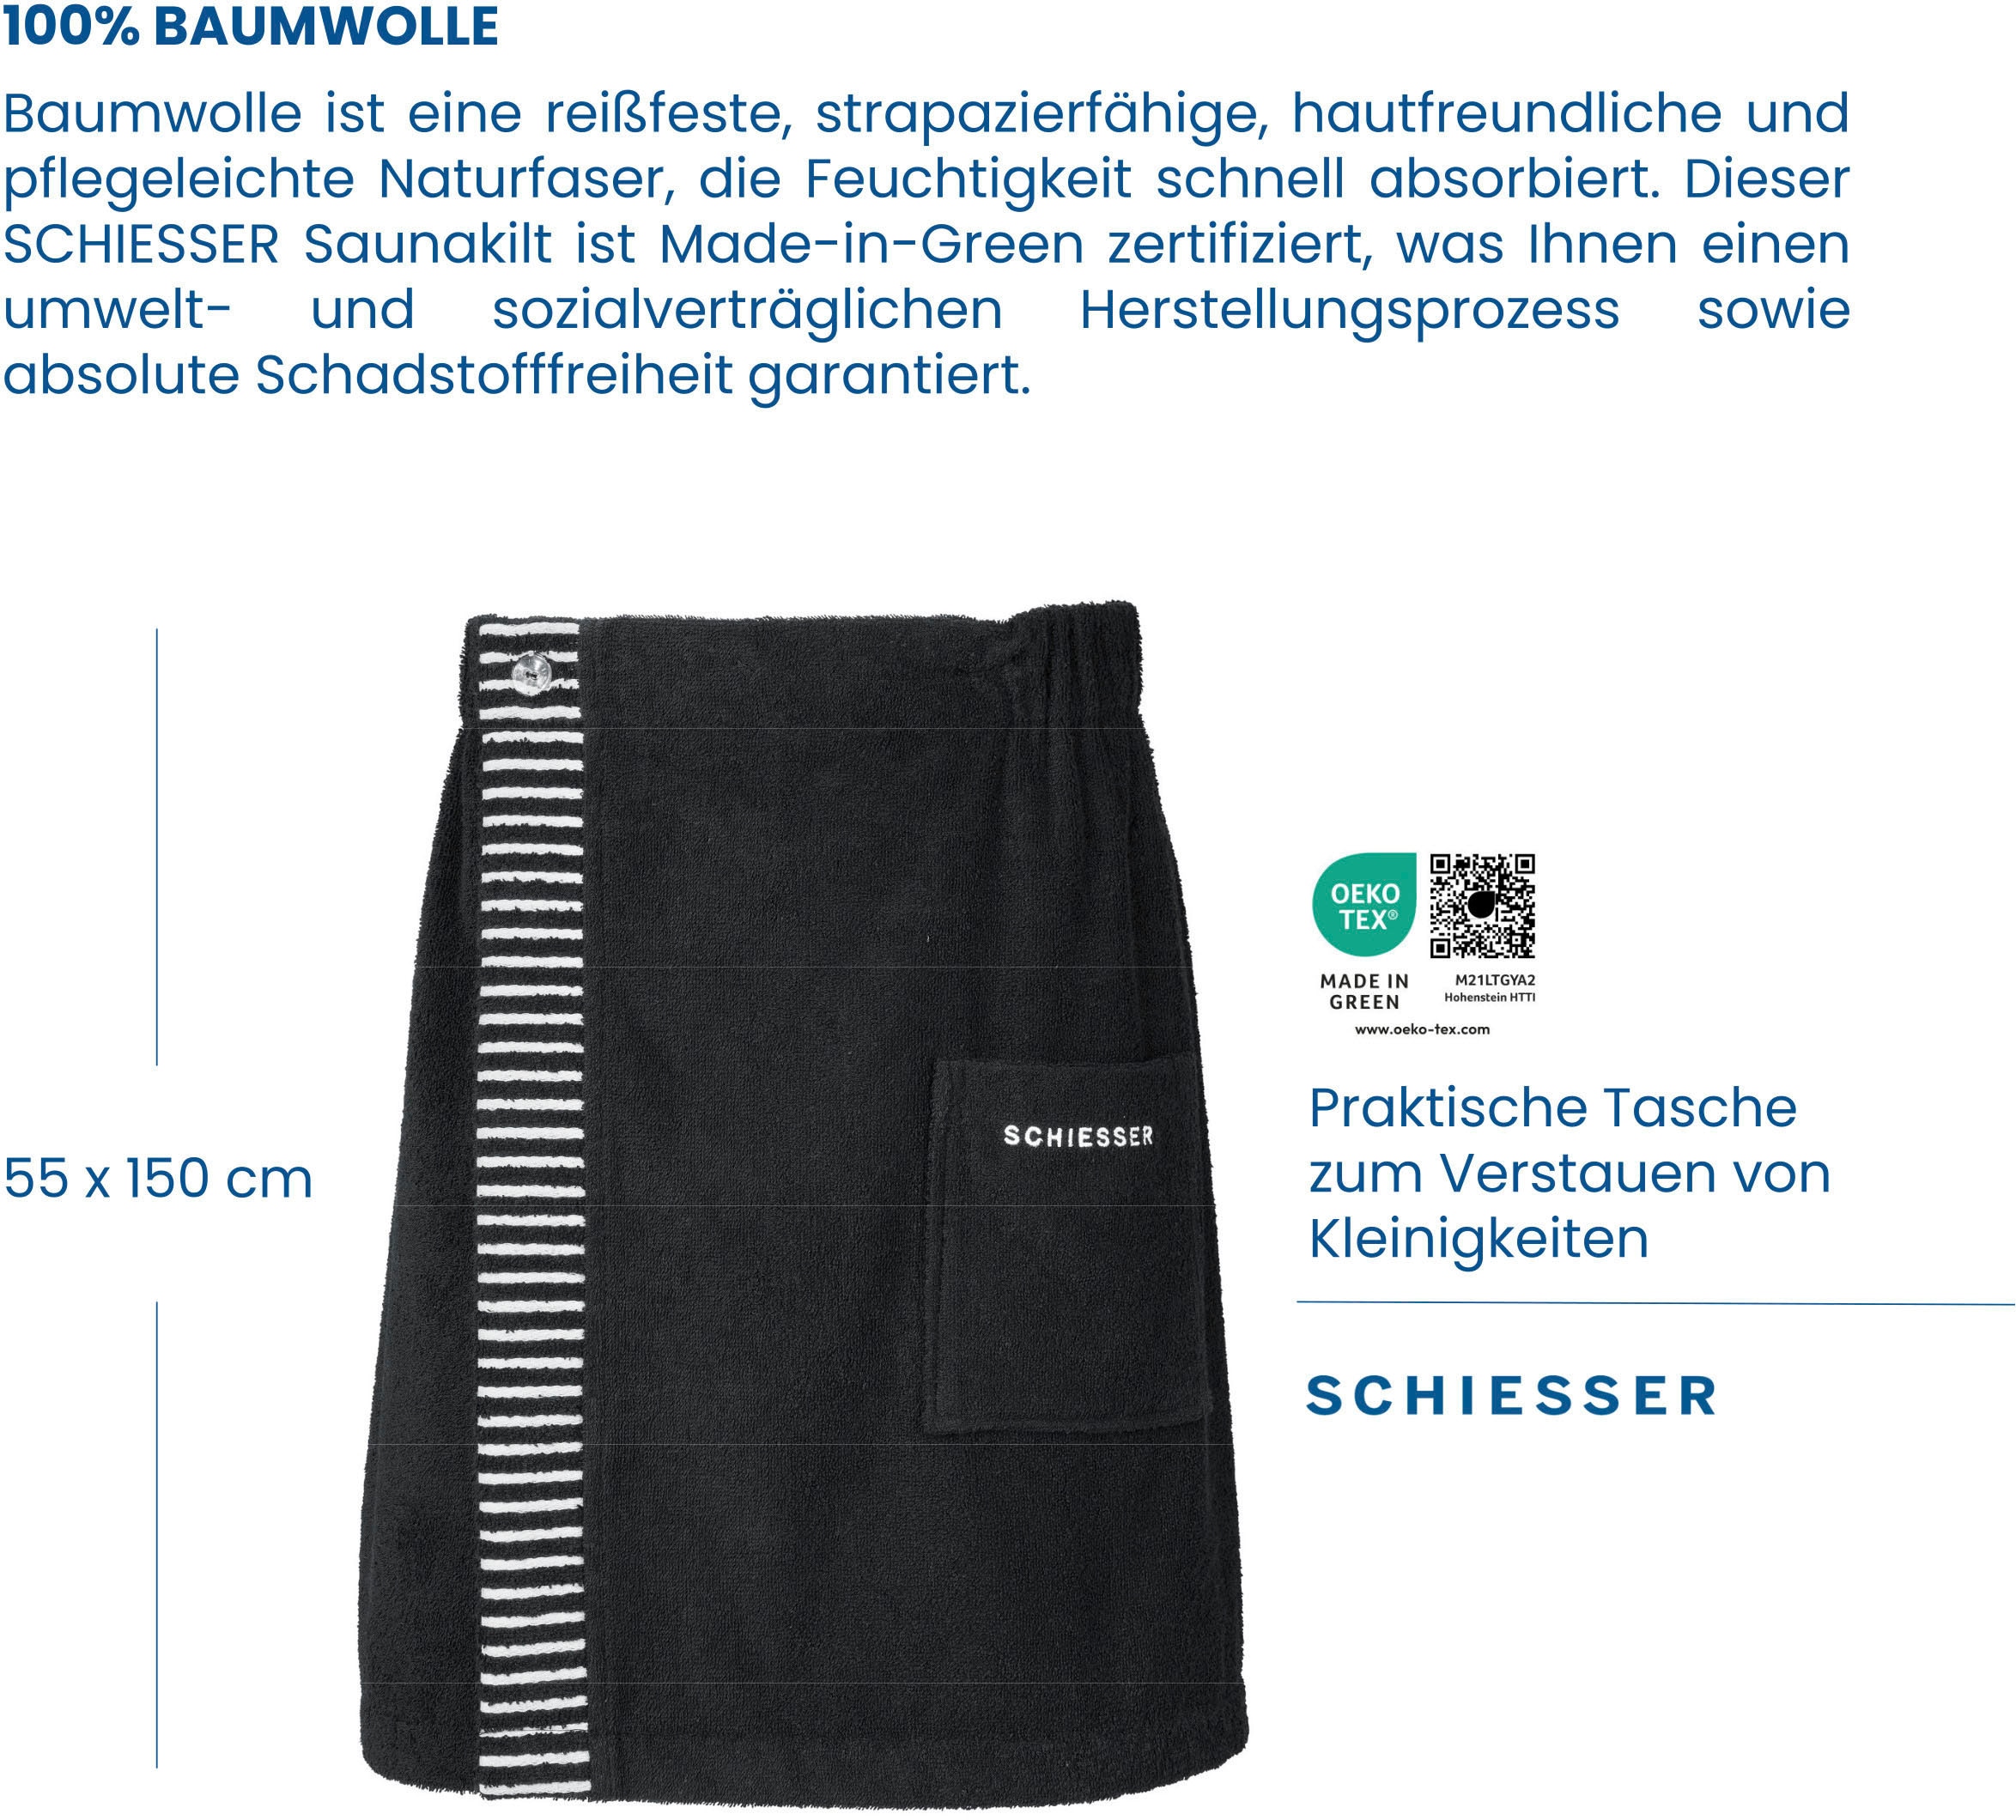 Schiesser Kilt »Saunakilt Rom für Herren aus saugstarkem Baumwoll-Frottier«, mit Streifen-Akzent und Logostickerei